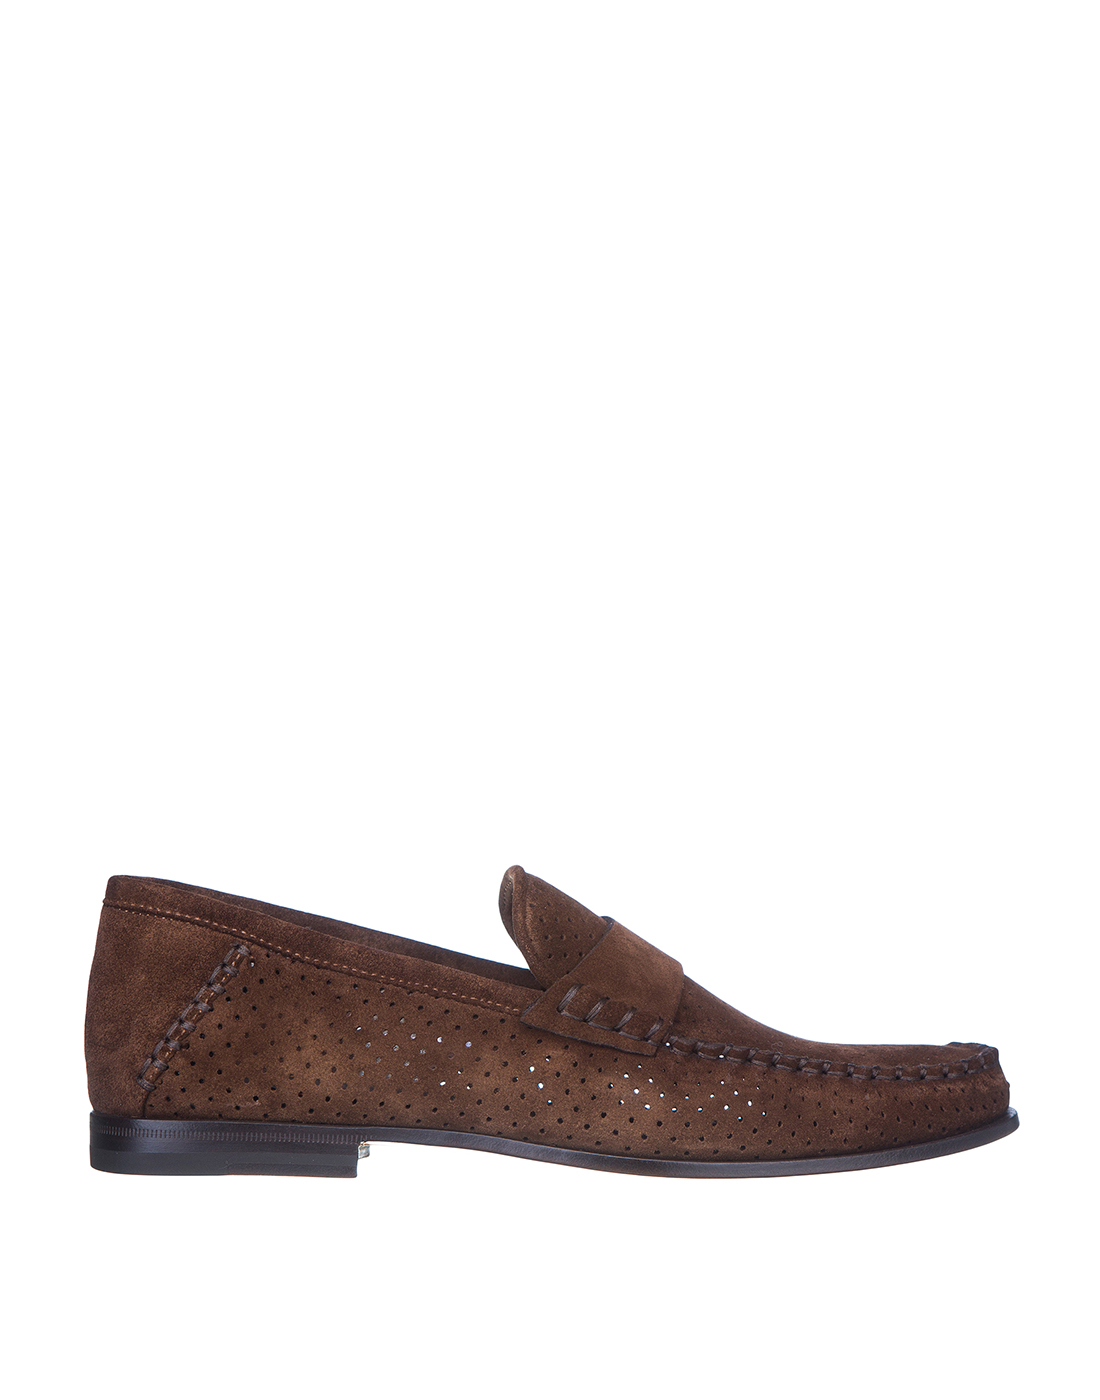 Туфли коричневые замшевые мужские  Santoni SMCPG15540LA5SRVLM62-1